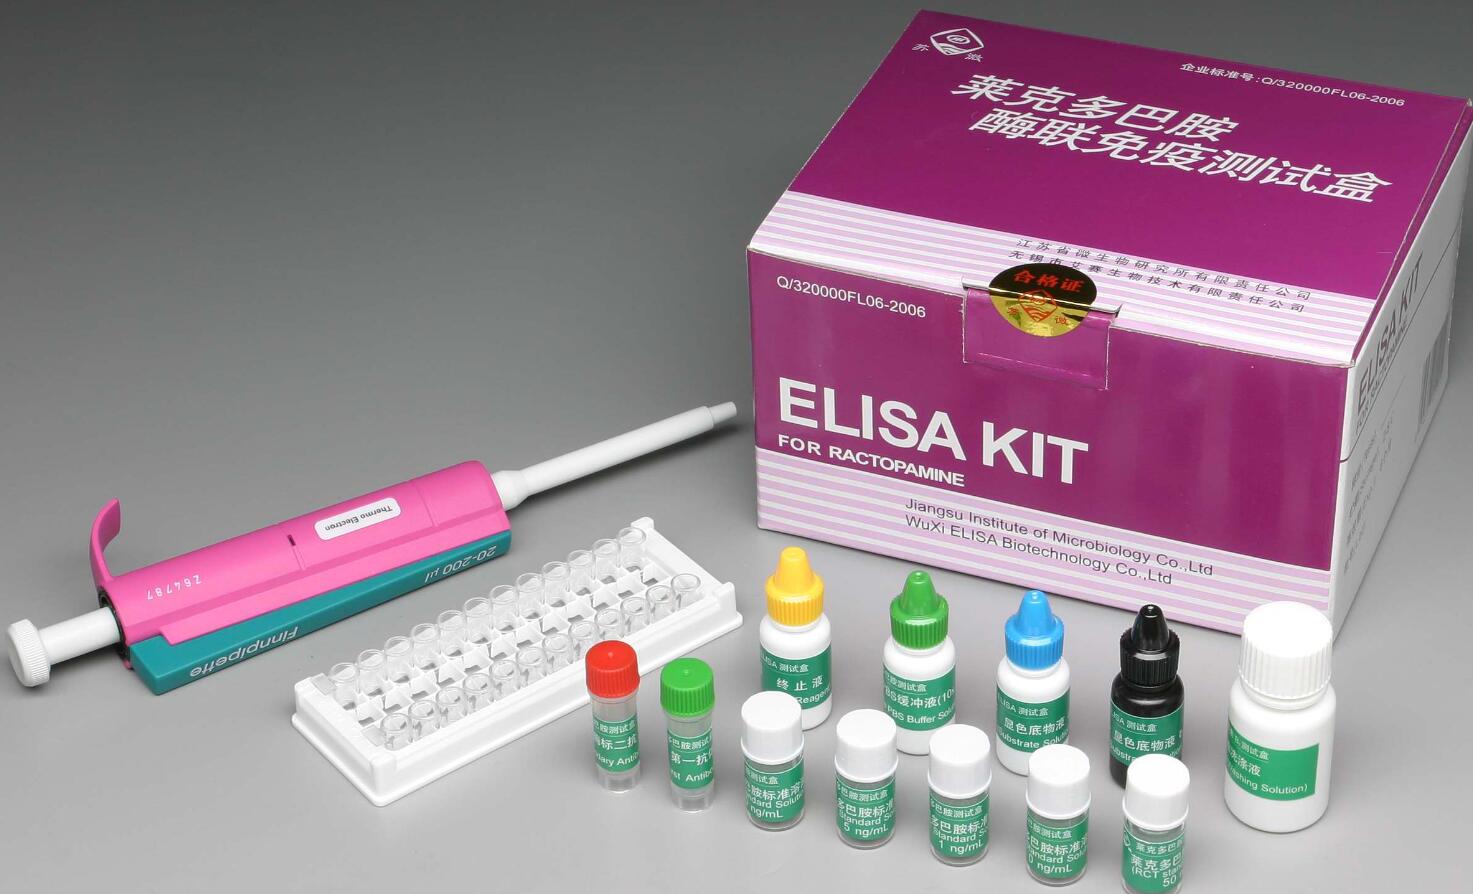 人输血传播病毒/辛型肝炎病毒((TTV)elisa免疫组化试剂盒品牌